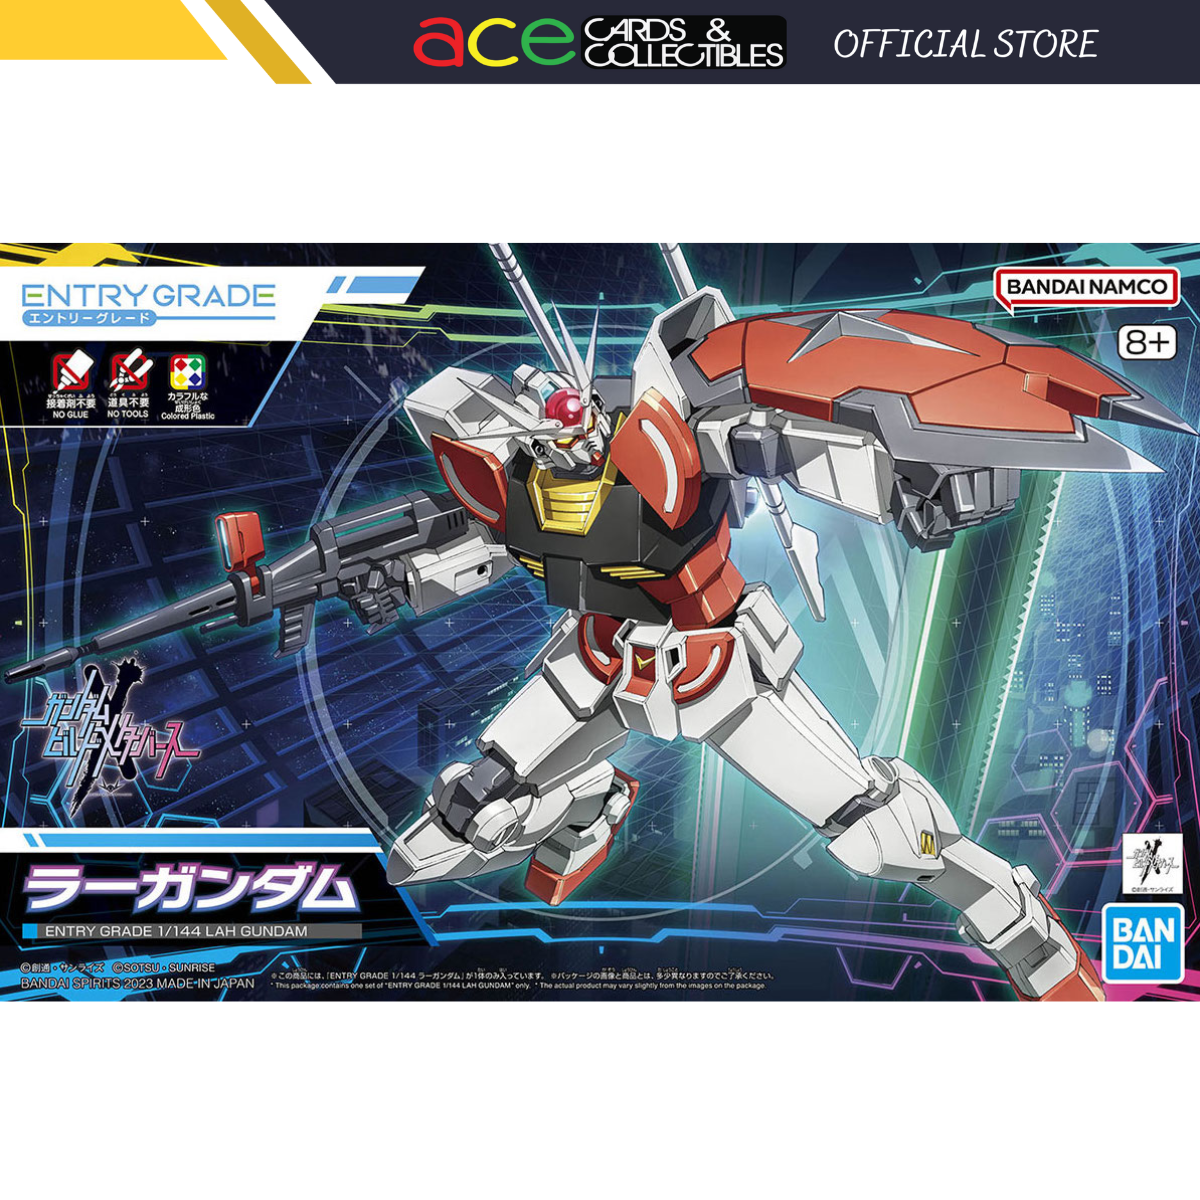 Gunpla Entry Grade 1/144 "Lah Gundam"-Bandai-Ace Cards & Collectibles